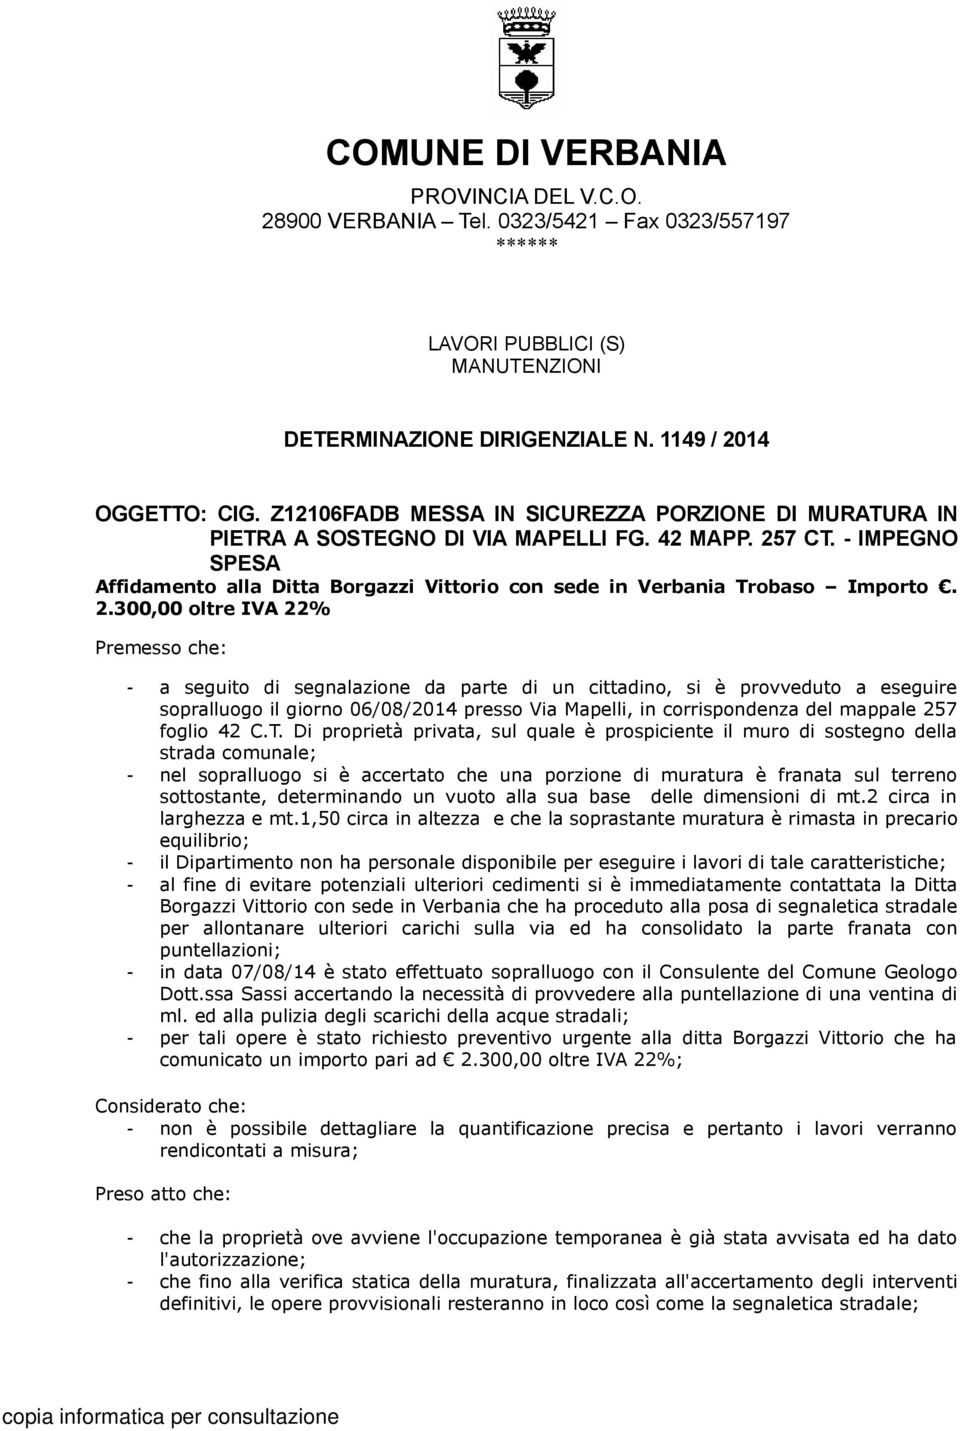 - IMPEGNO SPESA Affidamento alla Ditta Borgazzi Vittorio con sede in Verbania Trobaso Importo. 2.